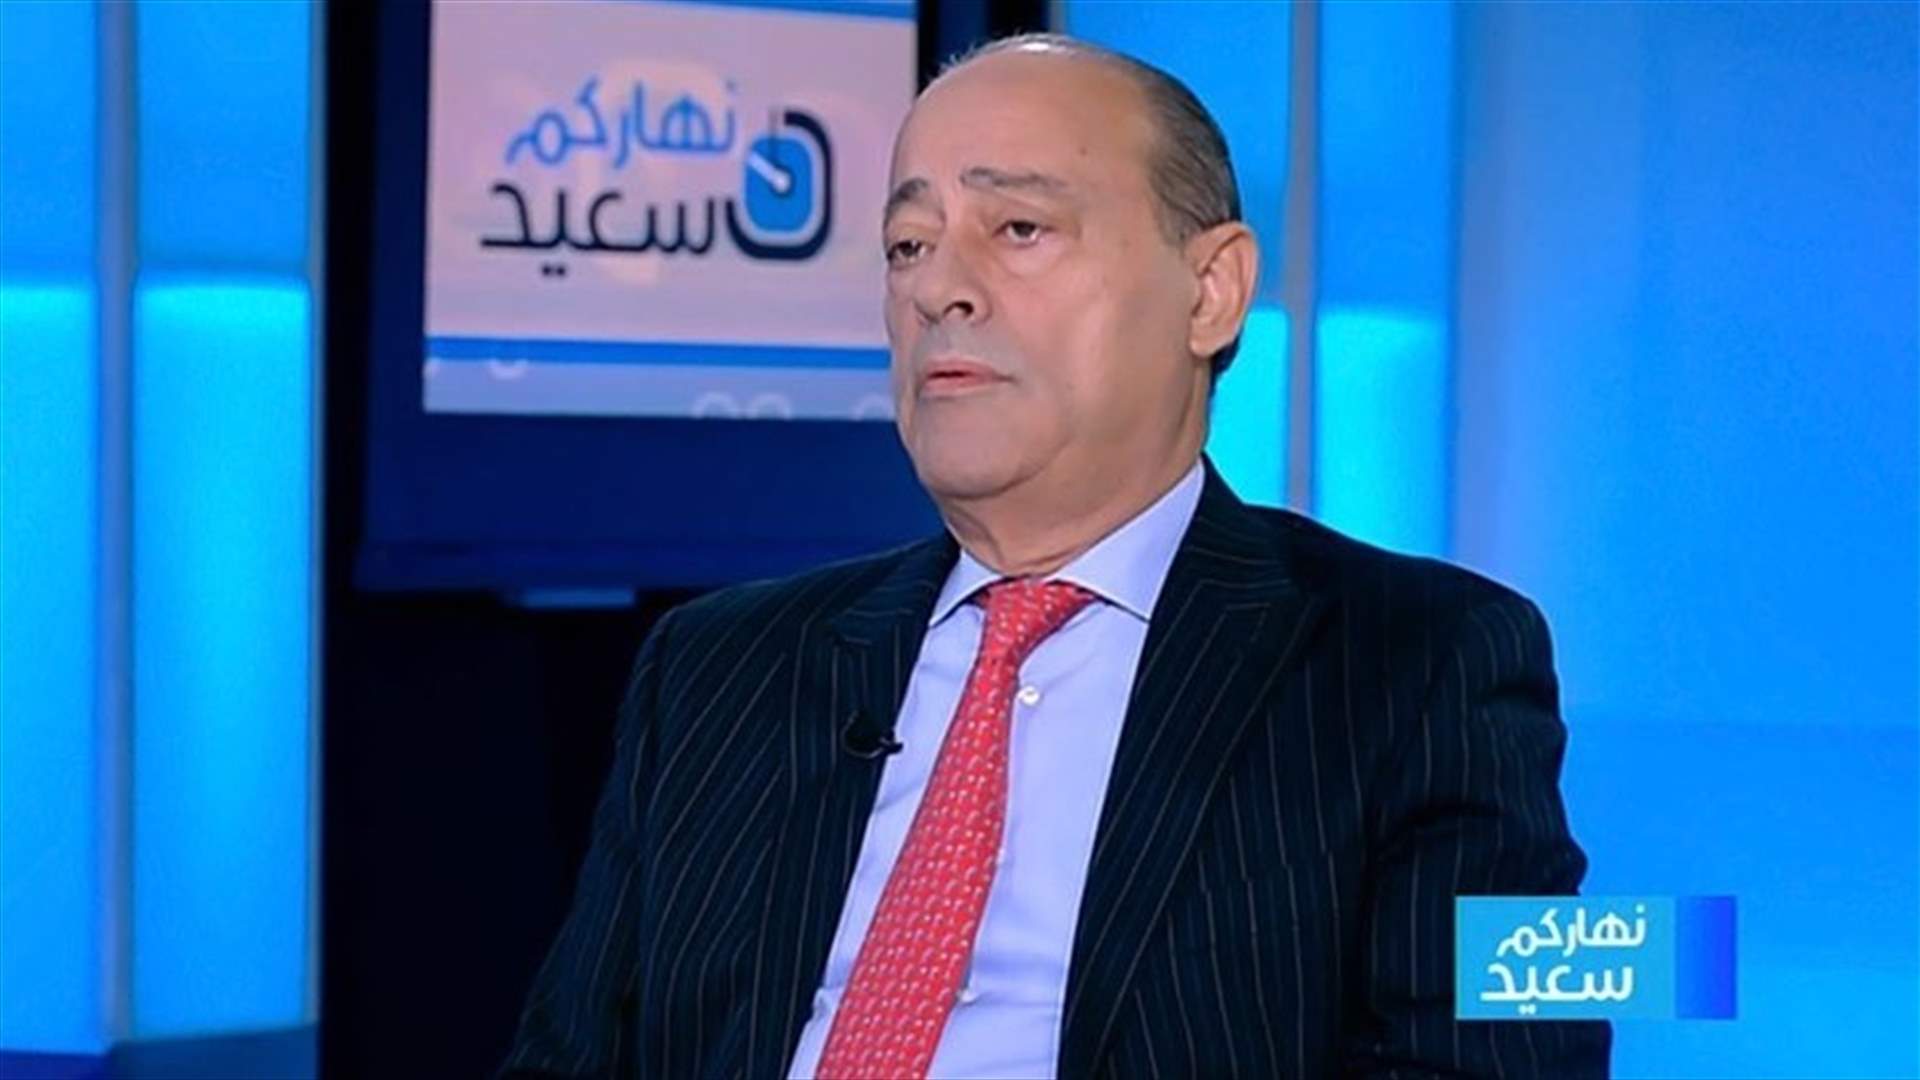 بعاصيري يستغرب النقاش حول دور نواب حاكم مصرف لبنان... وماذا قال عن اتهامه بأنه &quot;وديعة أميركية&quot;؟